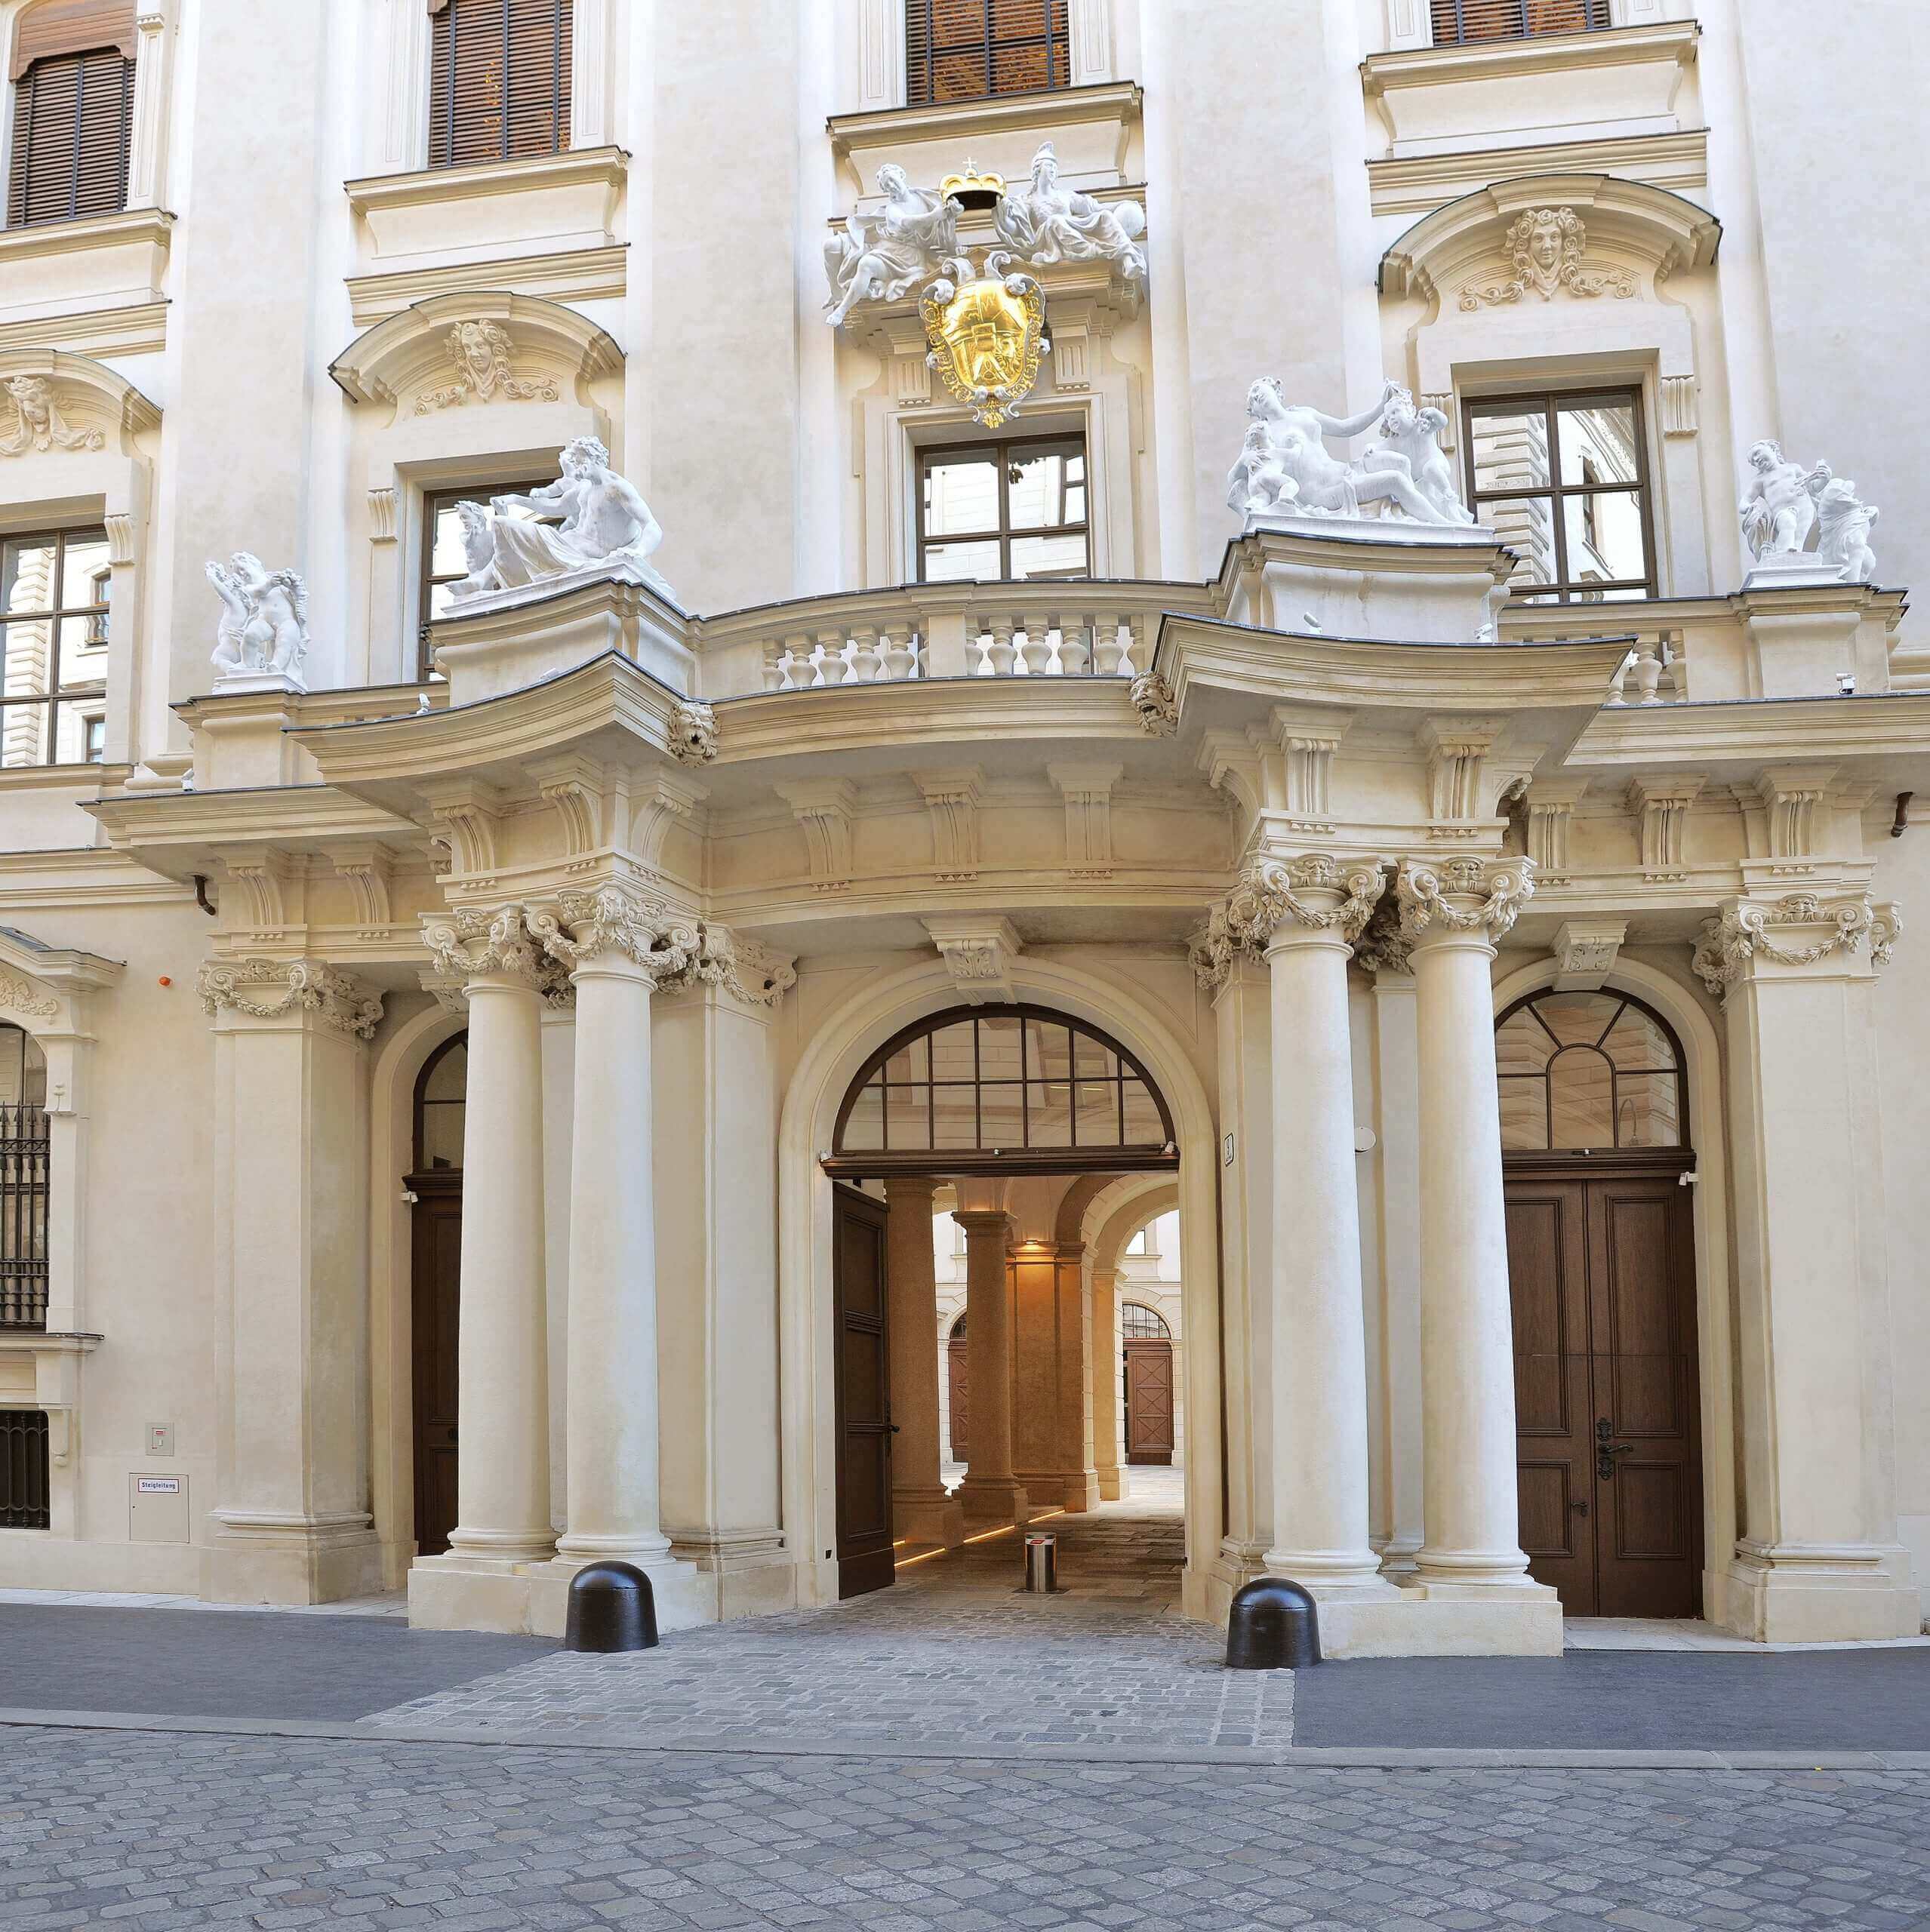 Palais Liechtenstein Vienna, frontage